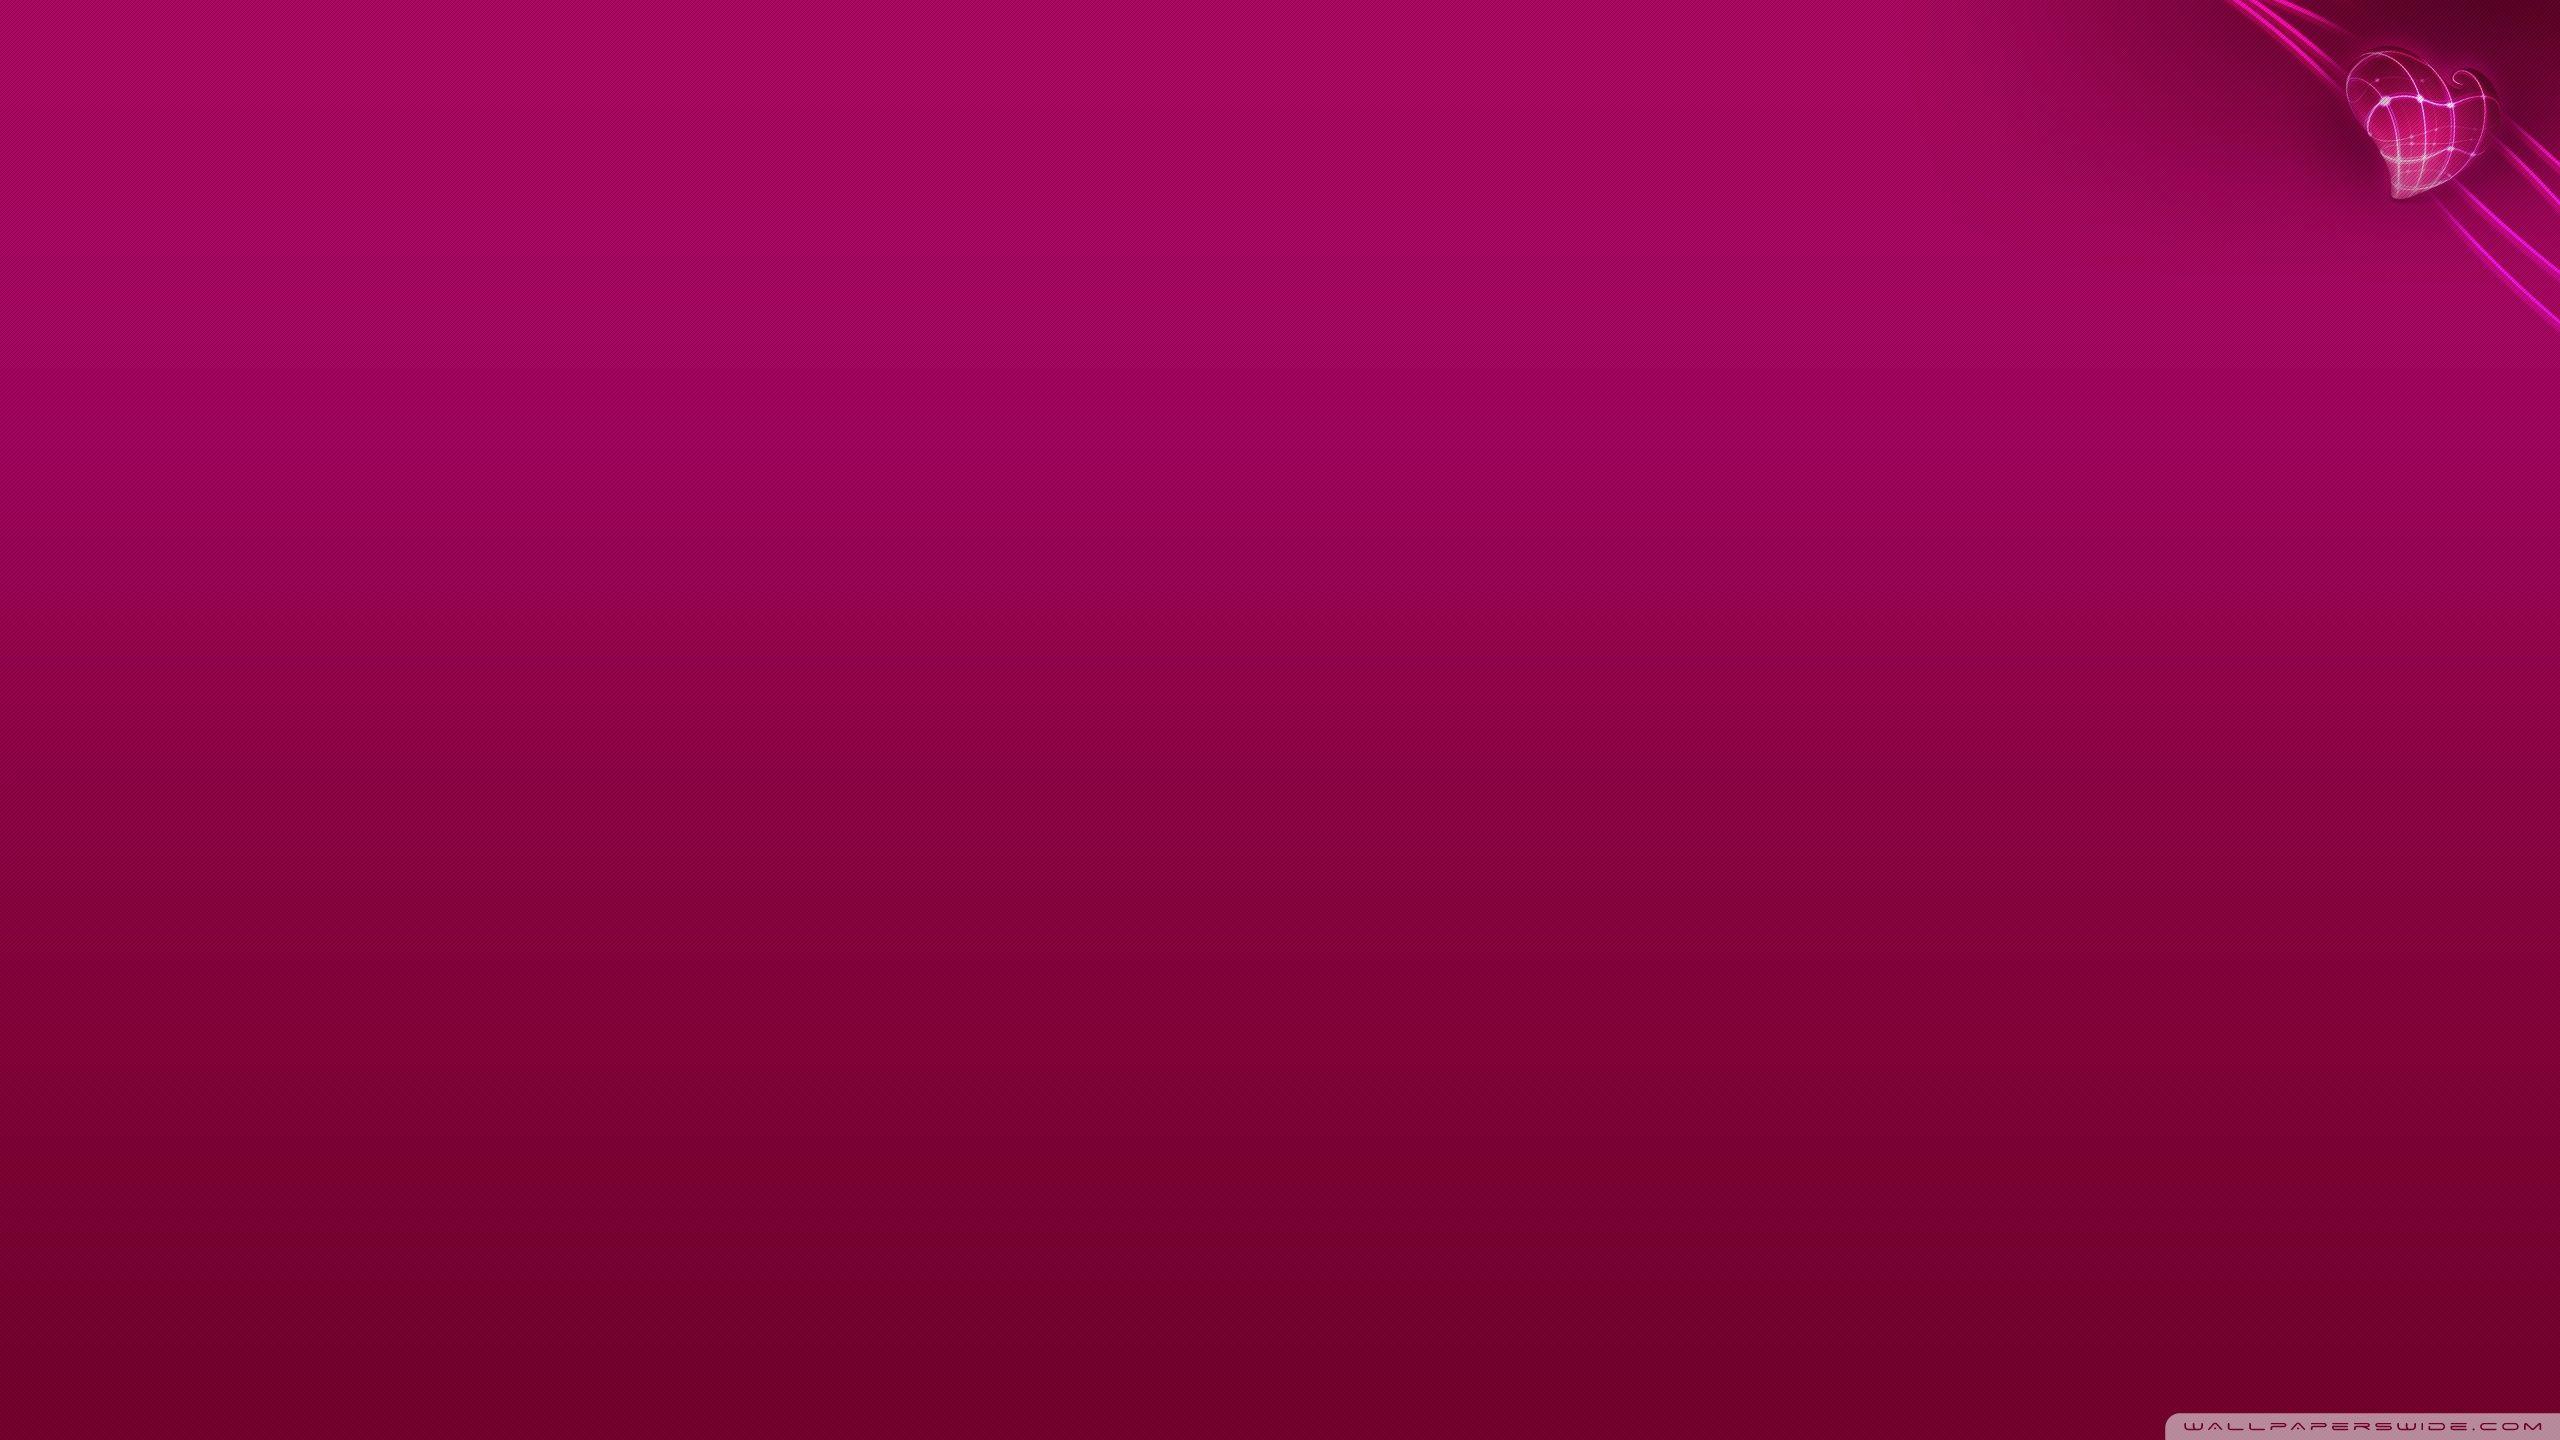 Pink Heart Background ❤ 4K HD Desktop Wallpaper for 4K Ultra HD TV